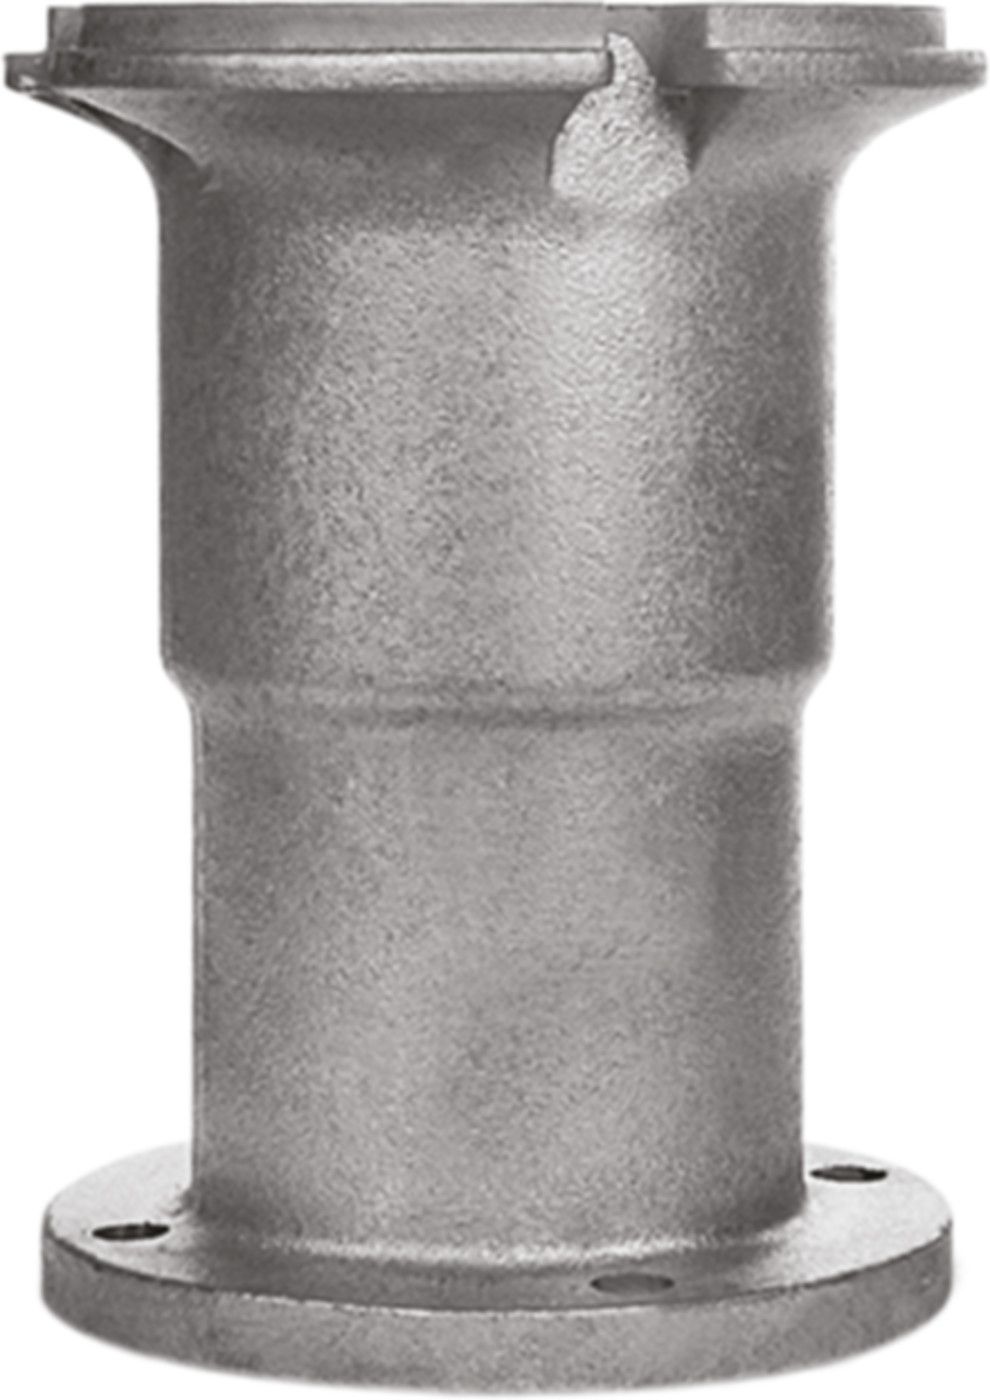 Obere Hydrantenverlängerung Fig. 7990 mit Spindelverlängerung H = 400mm - Von Roll Hydrantenzubehör